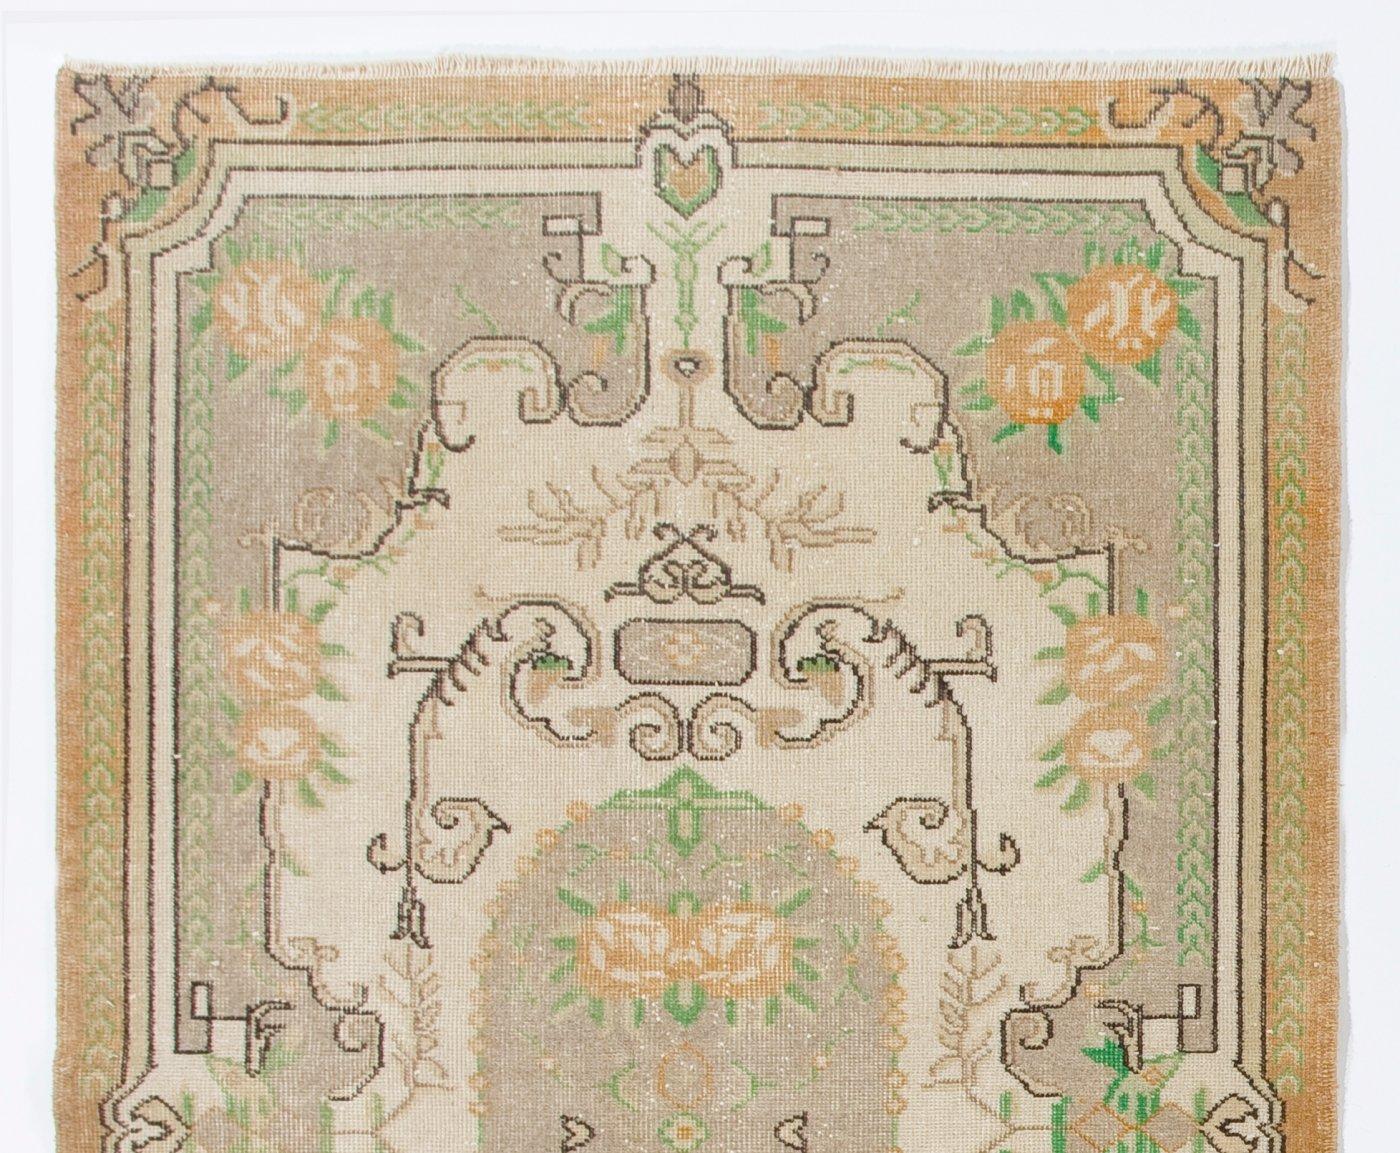 Un tapis turc vintage finement noué à la main dans les années 1960, présentant un motif floral romantique inspiré de l'Aubusson français, dans des tons ivoire, gris taupe clair, orange délavé et vert fougère.

Le tapis a des poils de laine